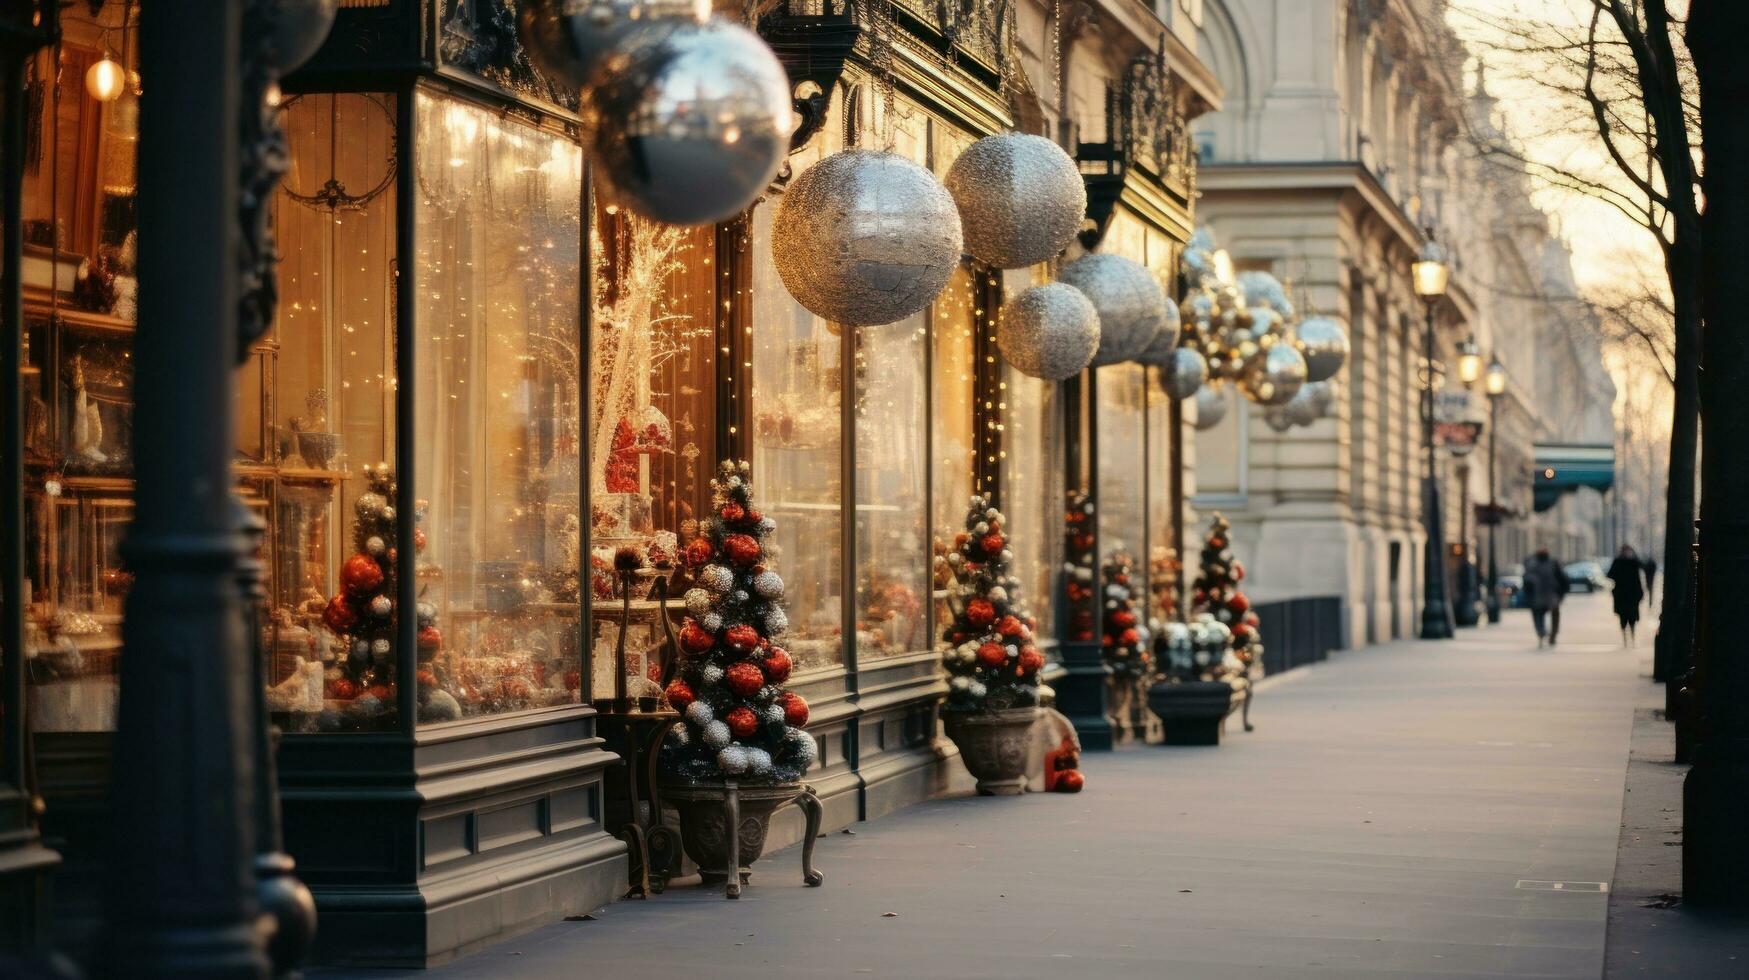 Navidad decoraciones en ciudad calle foto